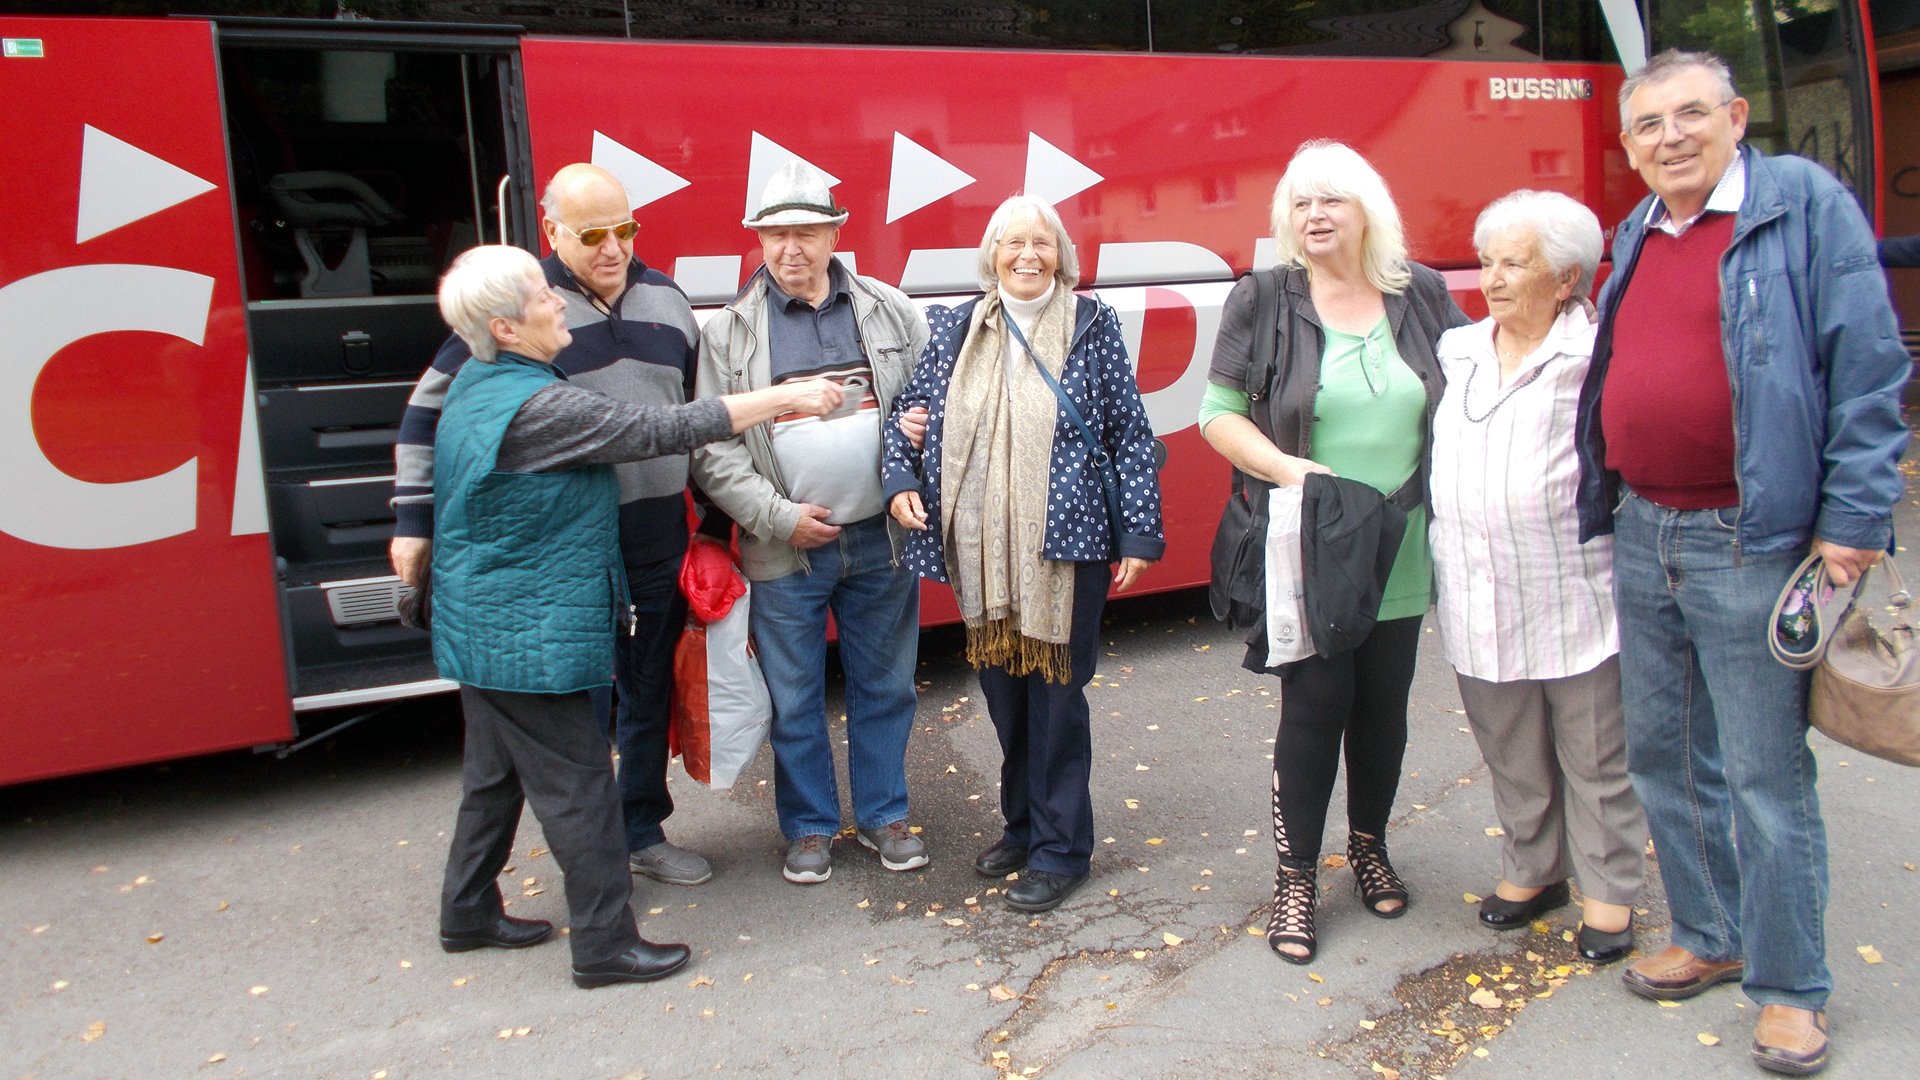 Gruppenfoto von vier Frauen und drei Männern vor einem roten Reisebus.